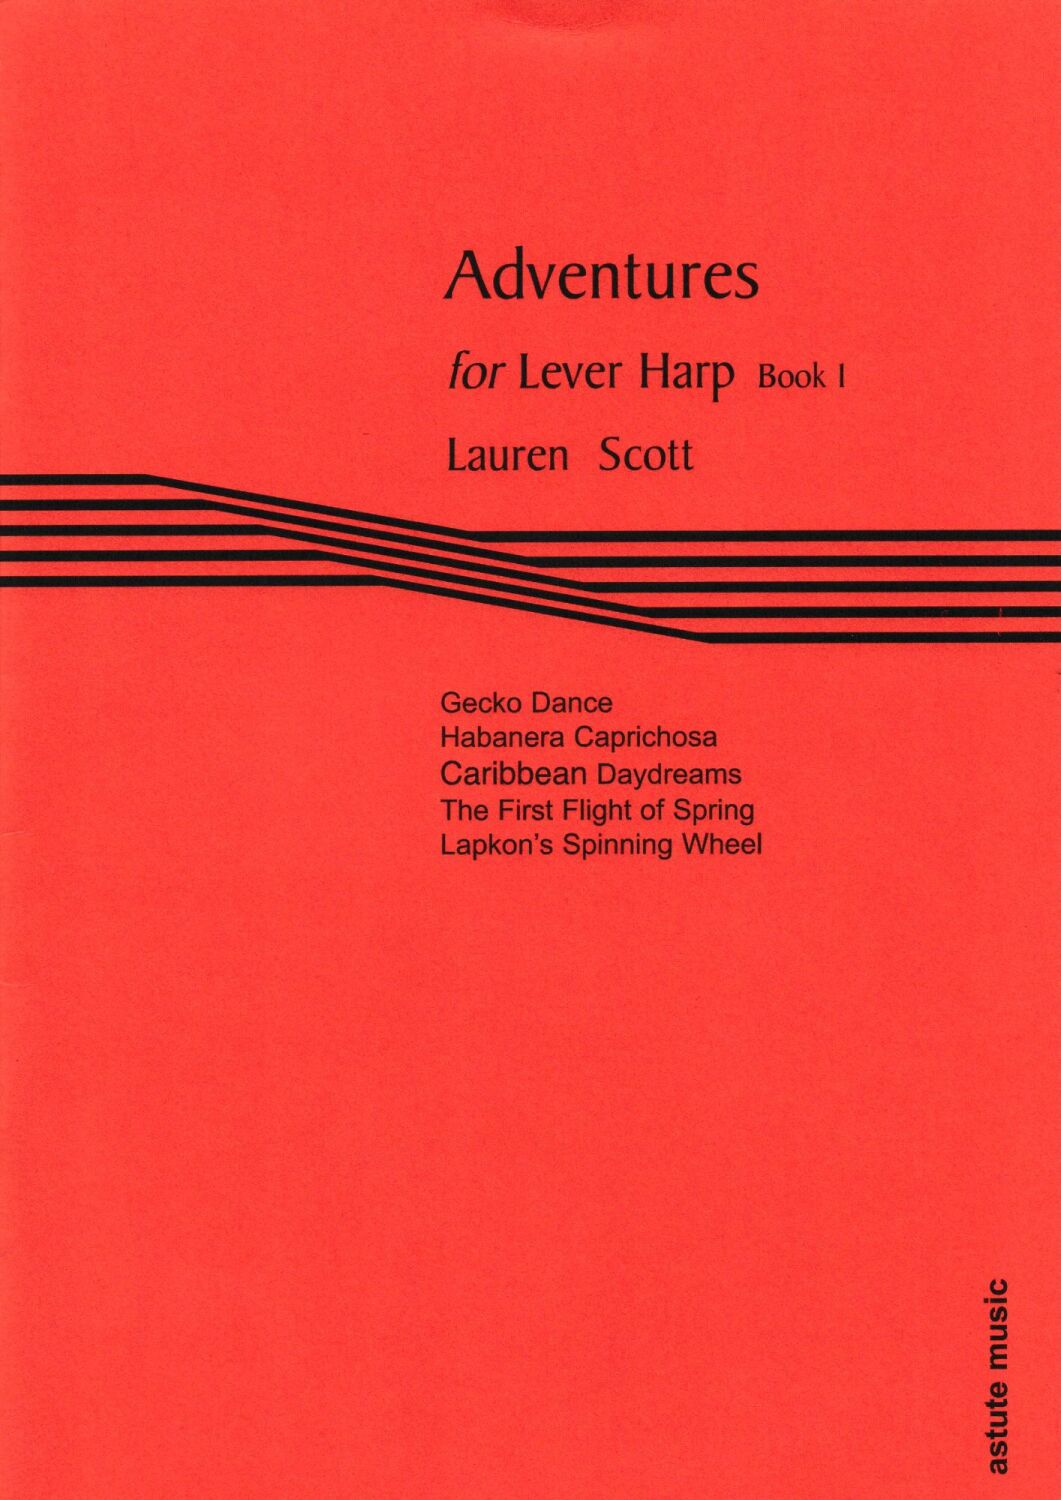 Adventures for Lever Harp Book 1 - Lauren Scott 